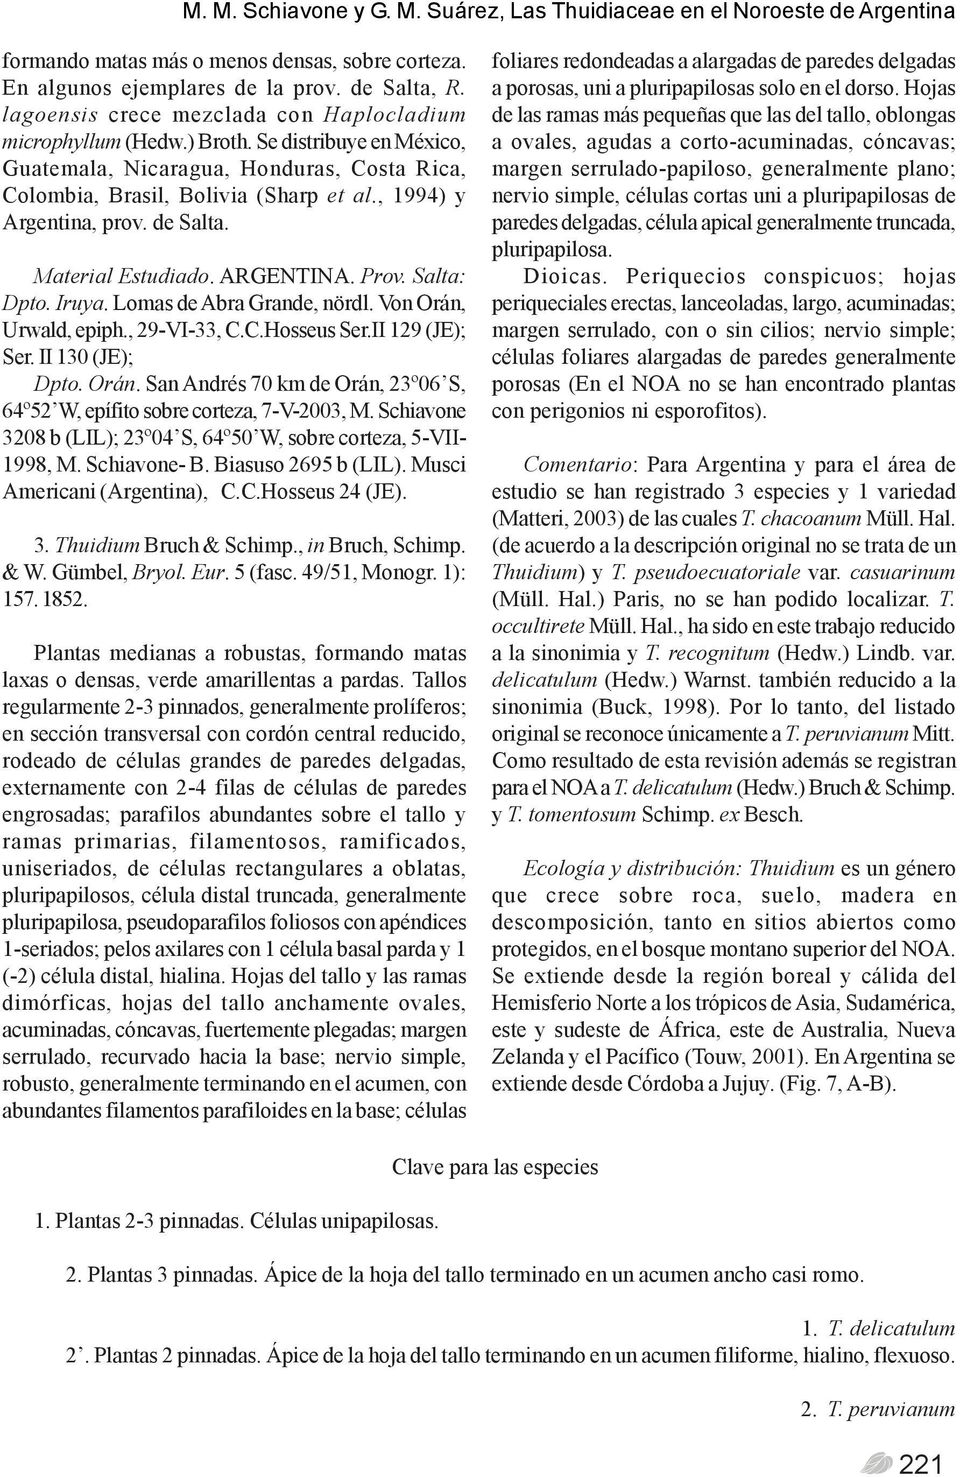 , 1994) y Argentina, prov. de Salta. Material Estudiado. ARGENTINA. Prov. Salta: Dpto. Iruya. Lomas de Abra Grande, nördl. Von Orán, Urwald, epiph., 29-VI-33, C.C.Hosseus Ser.II 129 (JE); Ser.